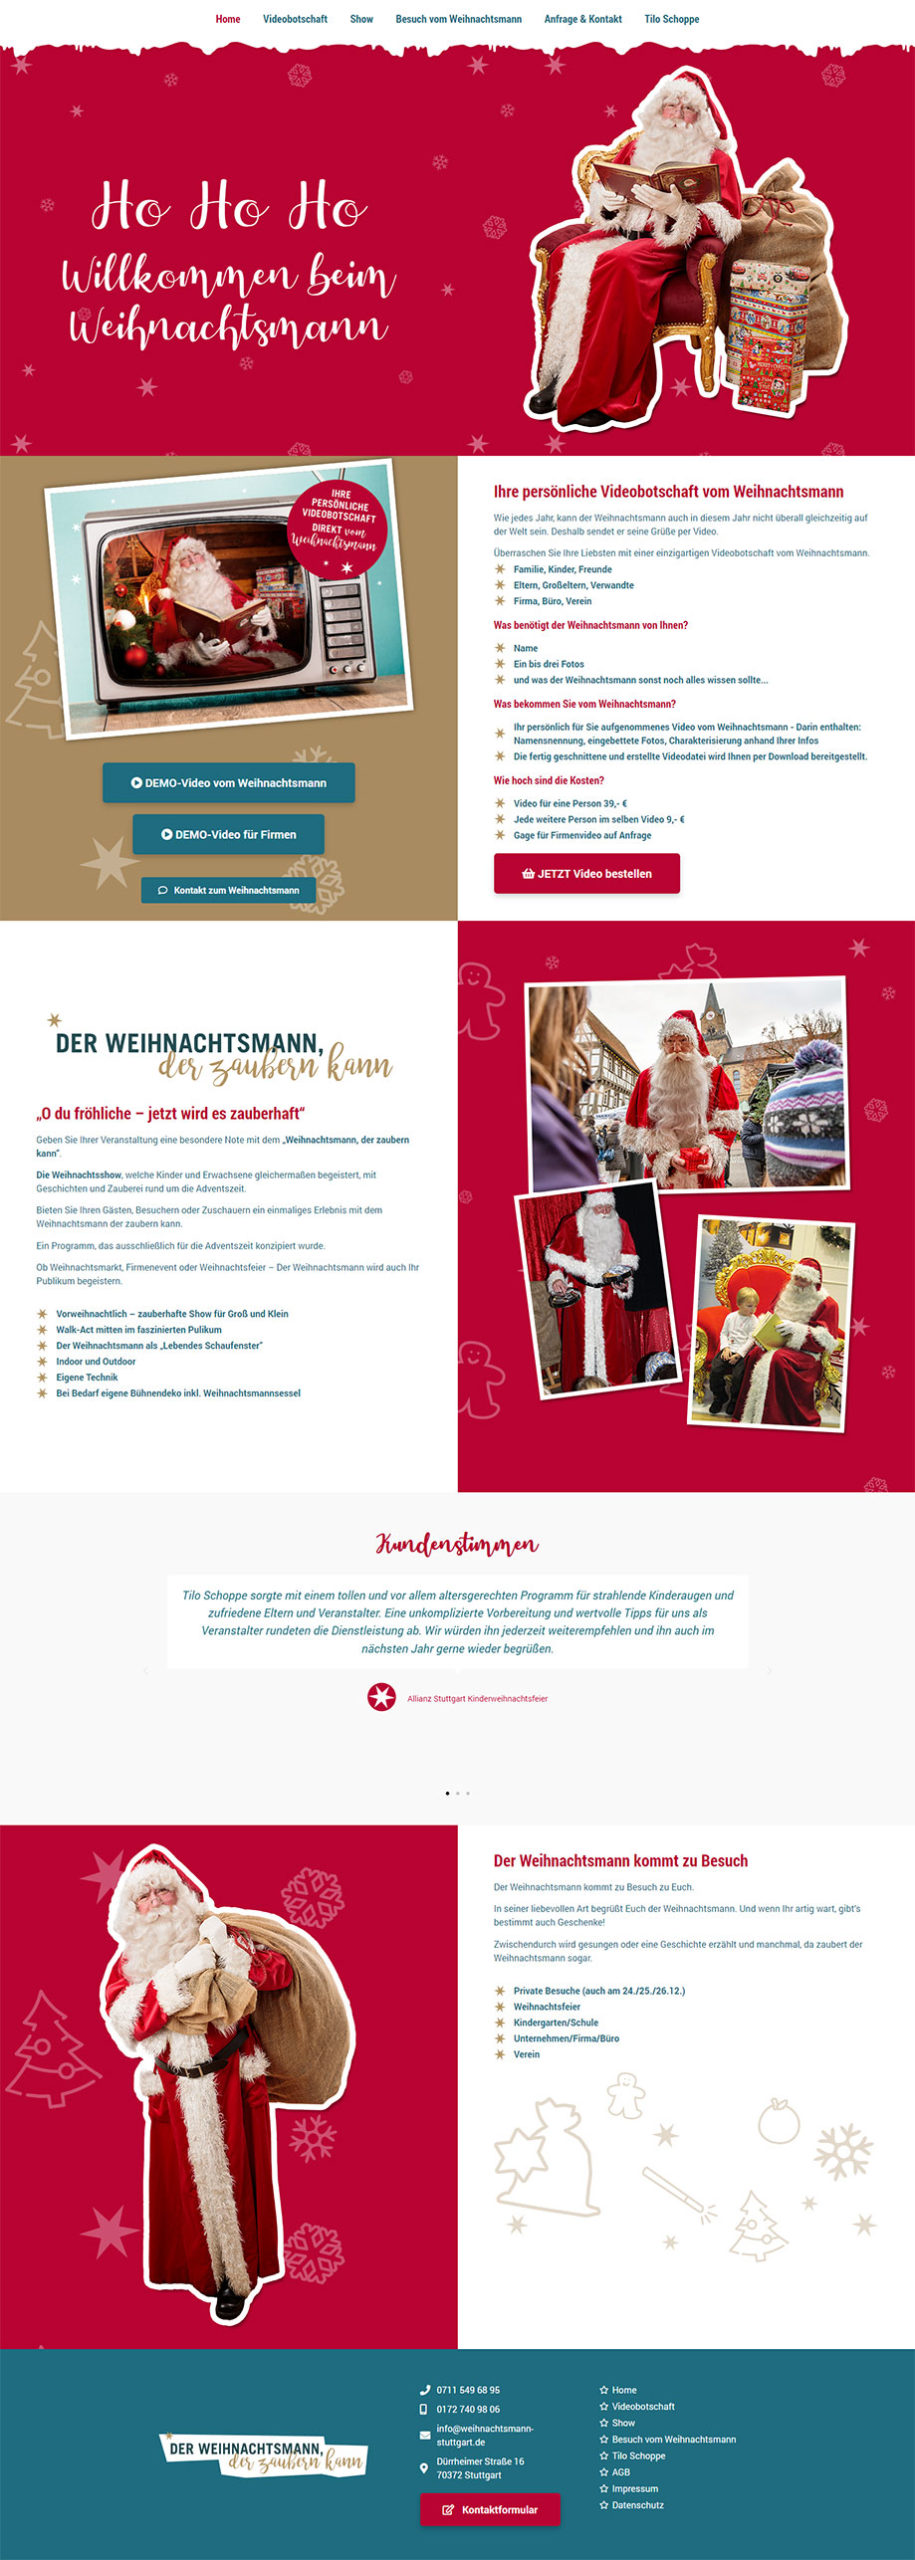 Webdesign Beispiel Weihnachtsmann